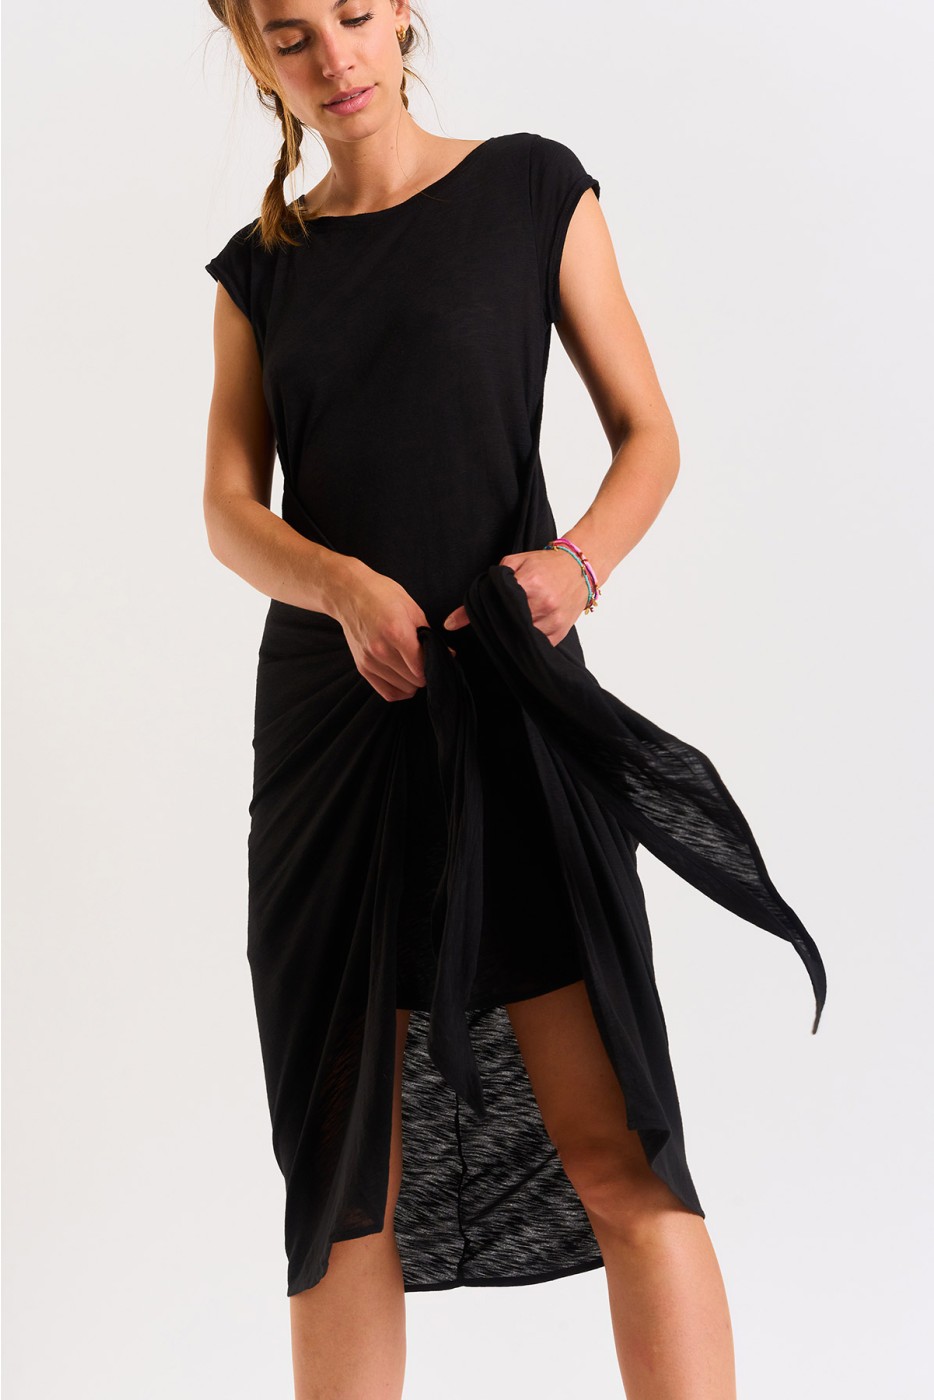 Caraiva Juliana black tied t-shirt dress | Banana Moon®